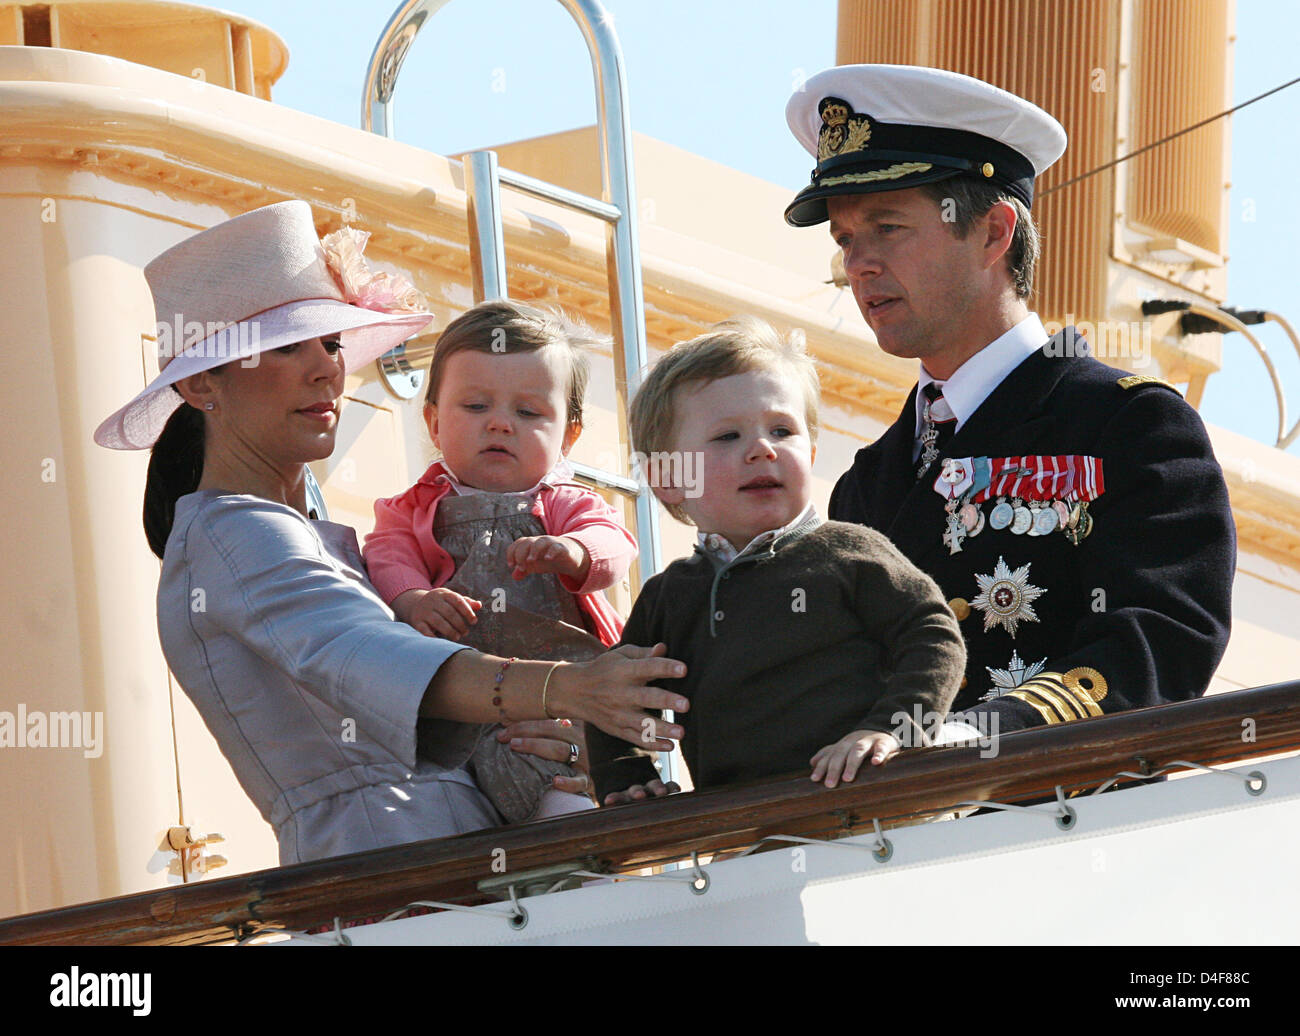 Le Prince héritier Frederik et la princesse Mary de Danemark et leurs enfants Princesse Isabella (2L) et Prince Christian arrivent à Svendborg, Danemark, 18 juin 2008. La famille royale est sur une croisière d'été de trois jours à travers le Danemark du Sud sur son yacht "annebrog'. Photo : Albert Nieboer (Pays-Bas) Banque D'Images